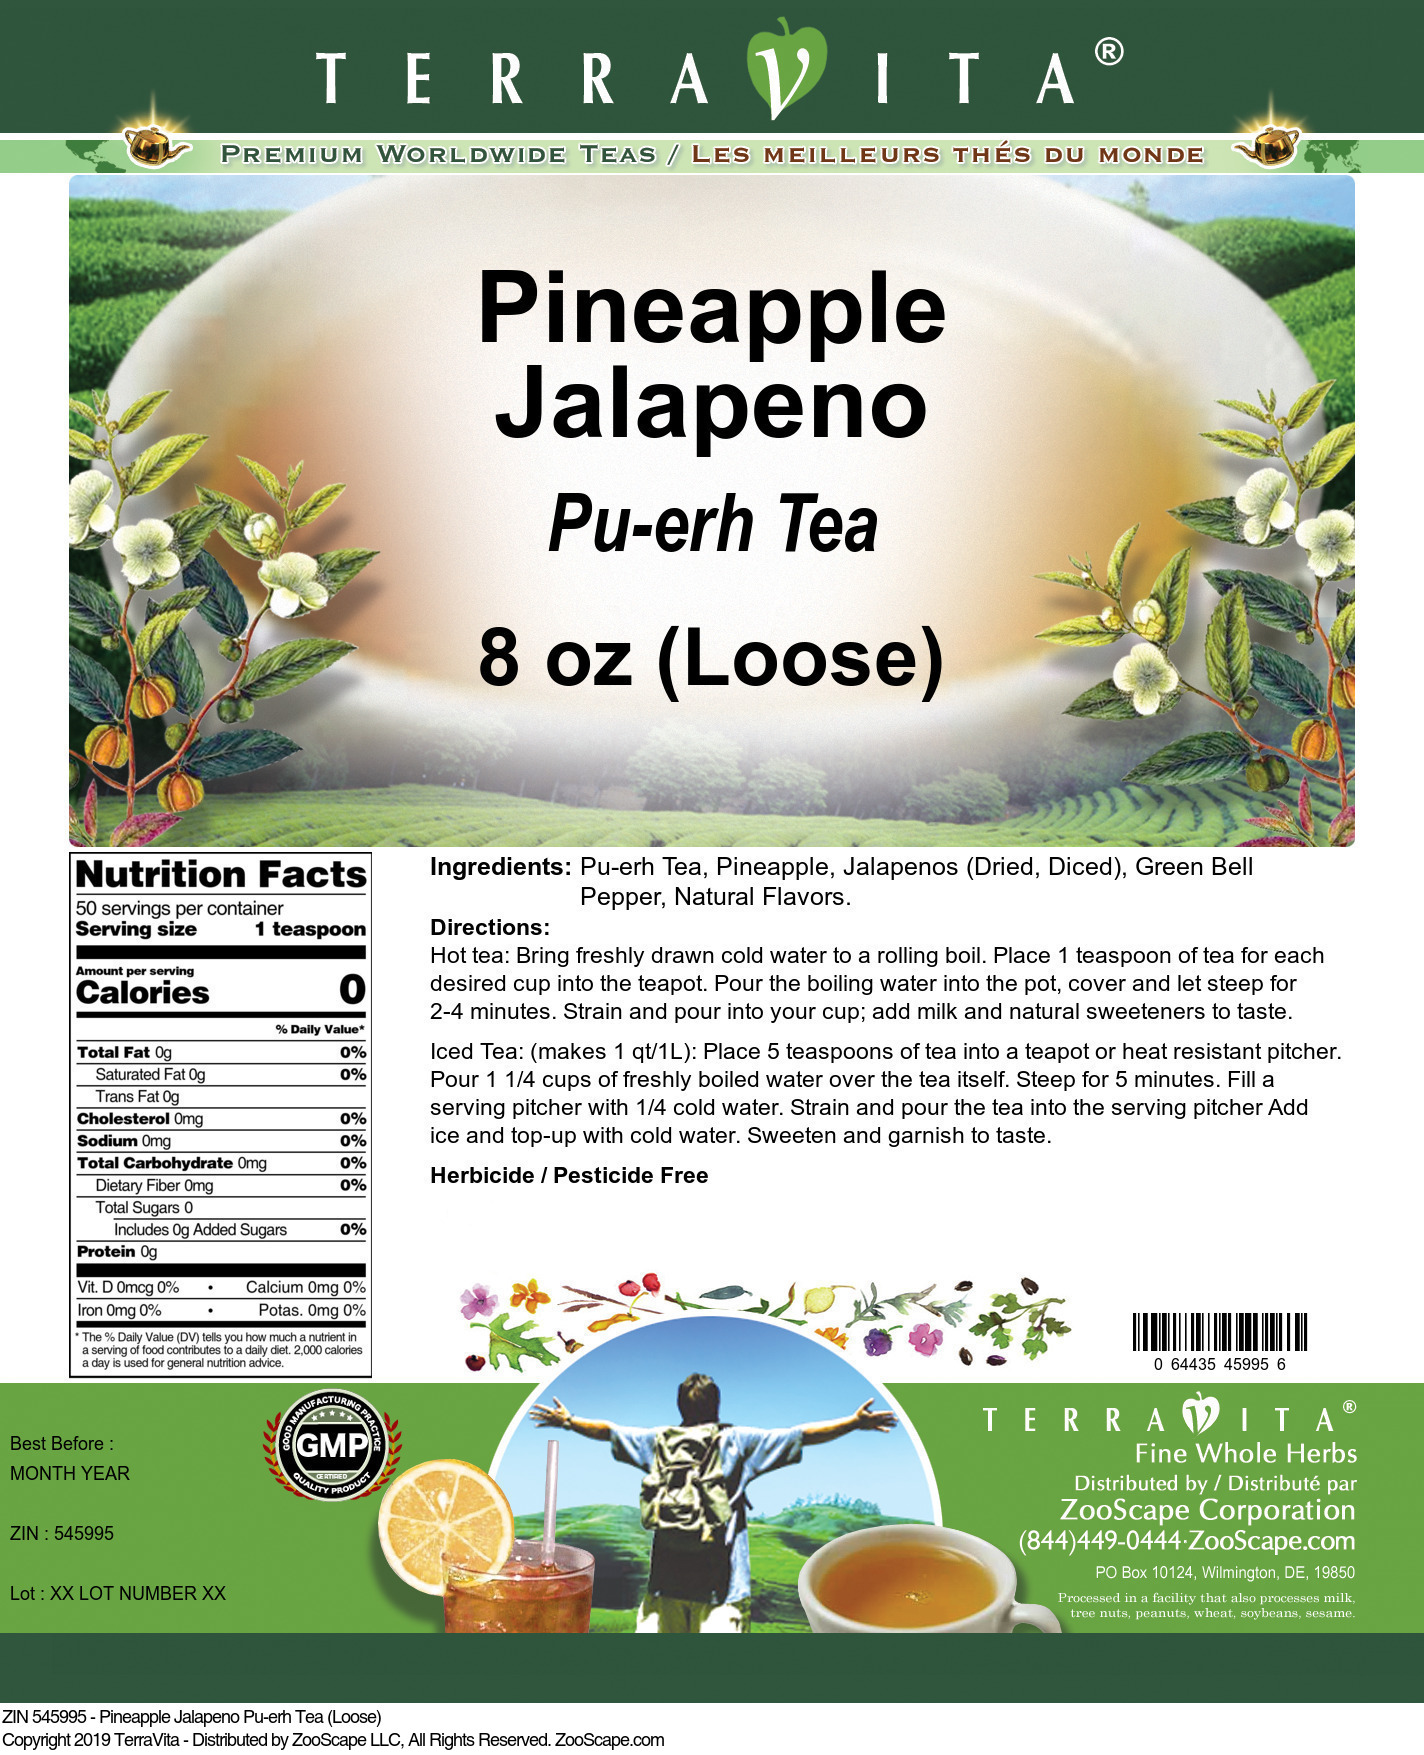 Pineapple Jalapeno Pu-erh Tea (Loose) - Label